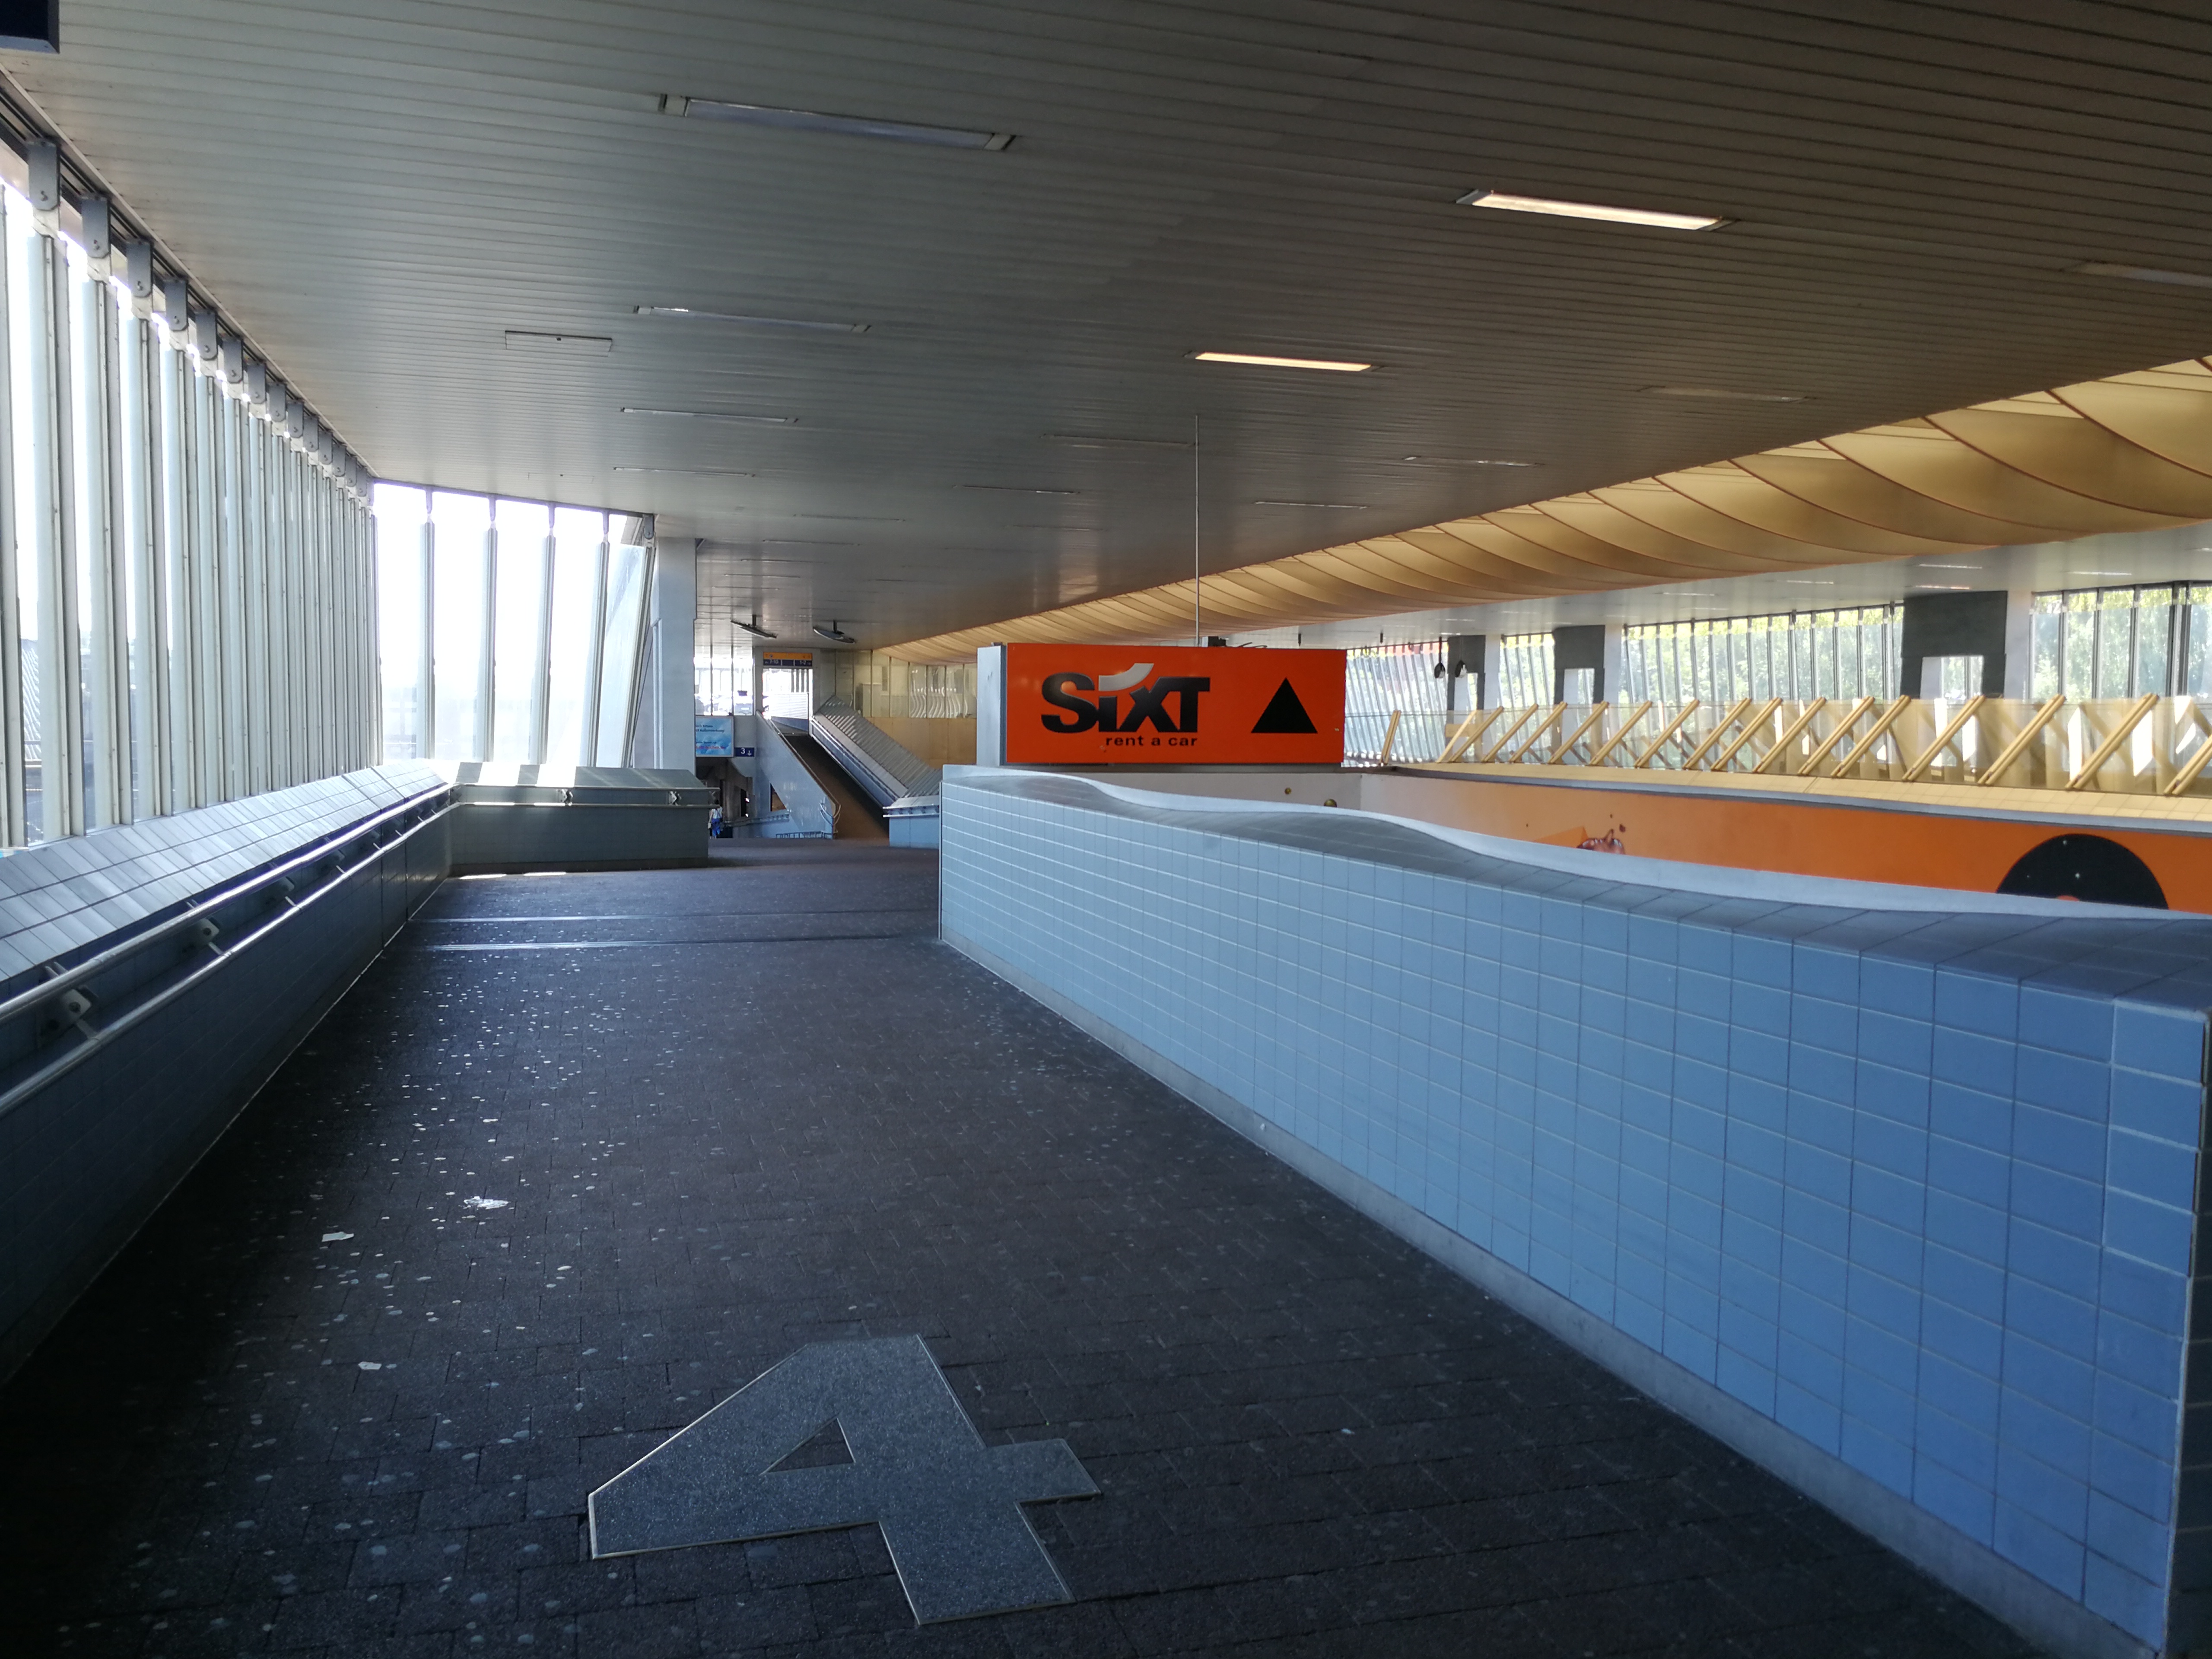 SIXT Autovermietung Kassel Bahnhof, Willy-Brandt-Platz 1 in Kassel